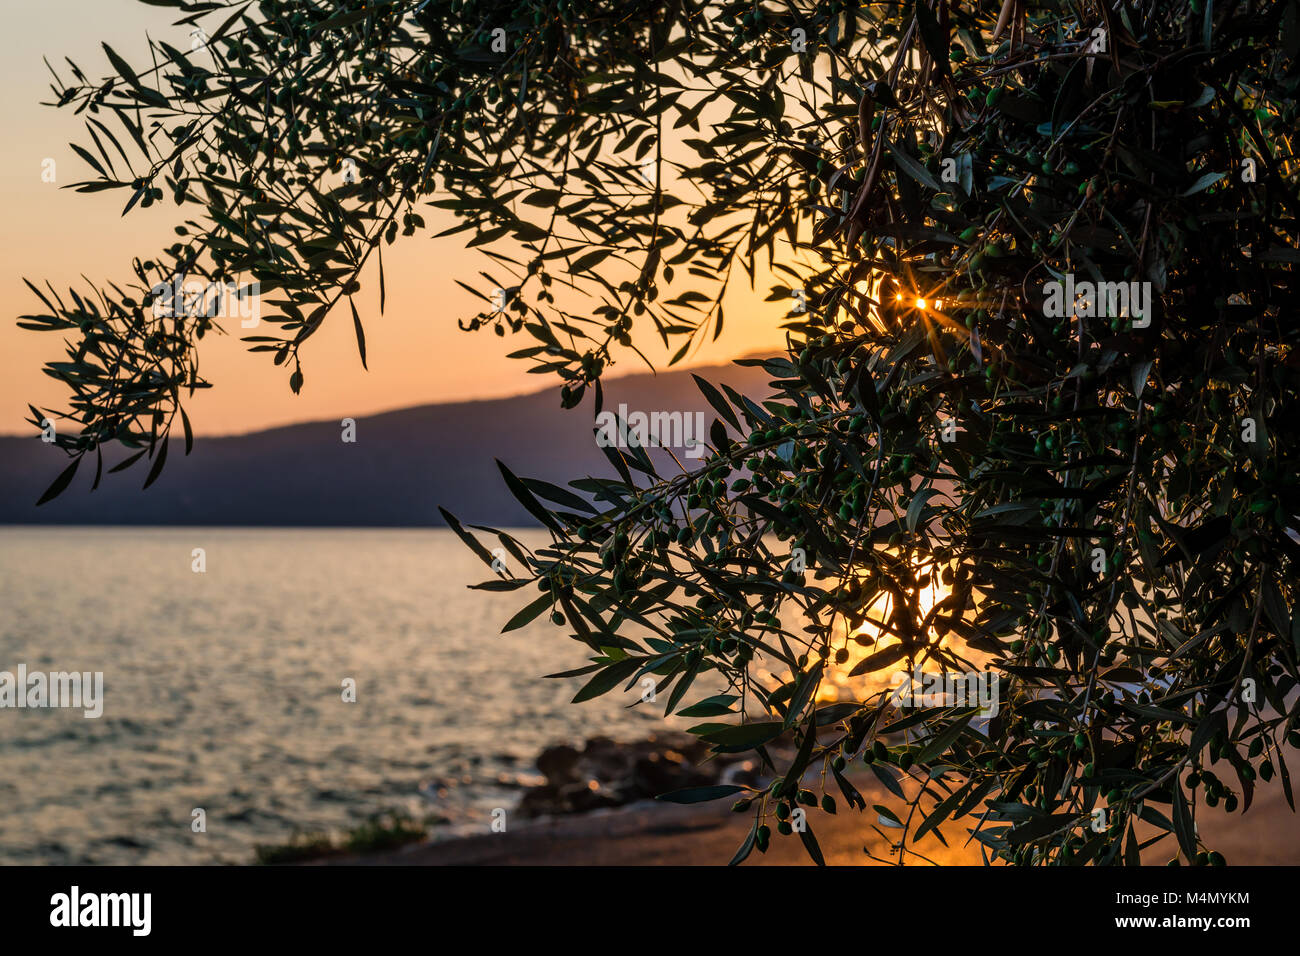 Incontrami in estate, in Grecia. Tramonto sul mare, vicino all'ulivo. Foto Stock